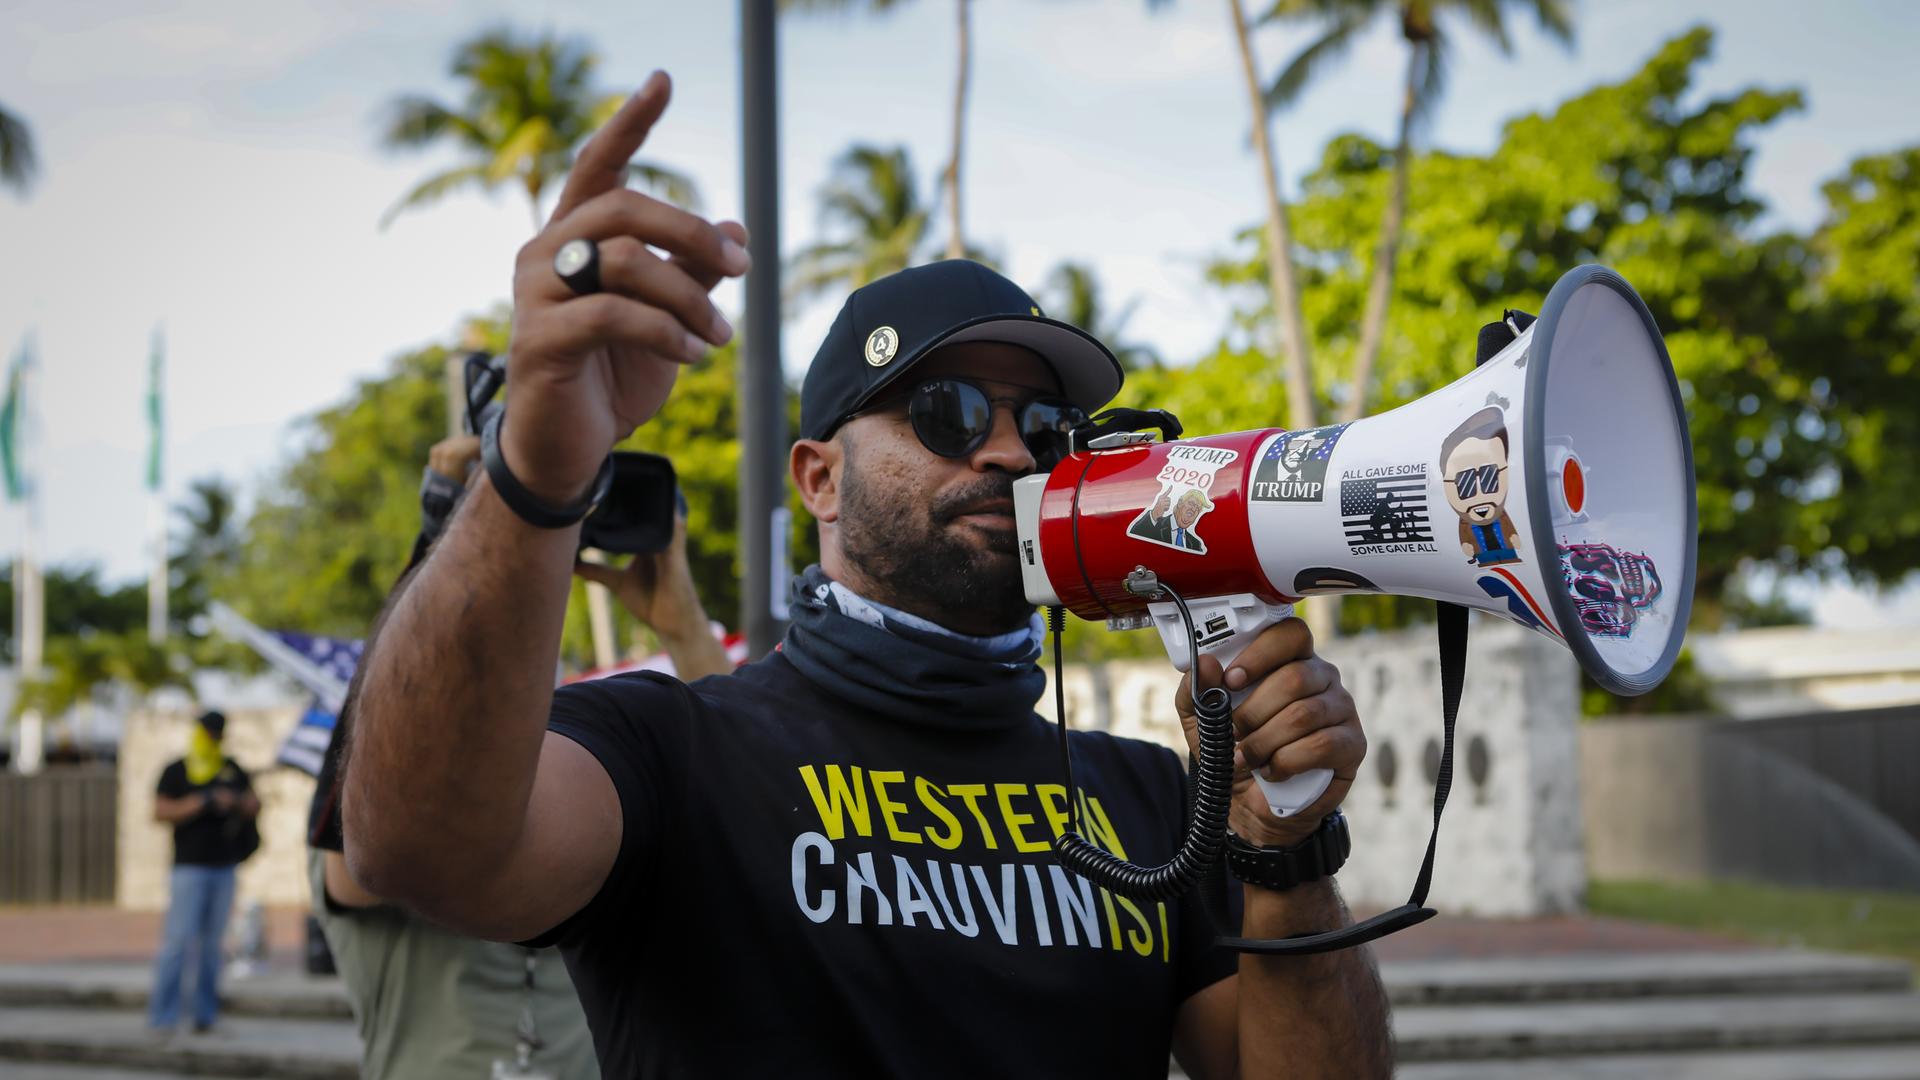 Ein Mann mit einem T-Shirt mit der Aufschrift "Western Chauvinist" spricht in ein mit Trump-Stickern beklebtes Megafon.